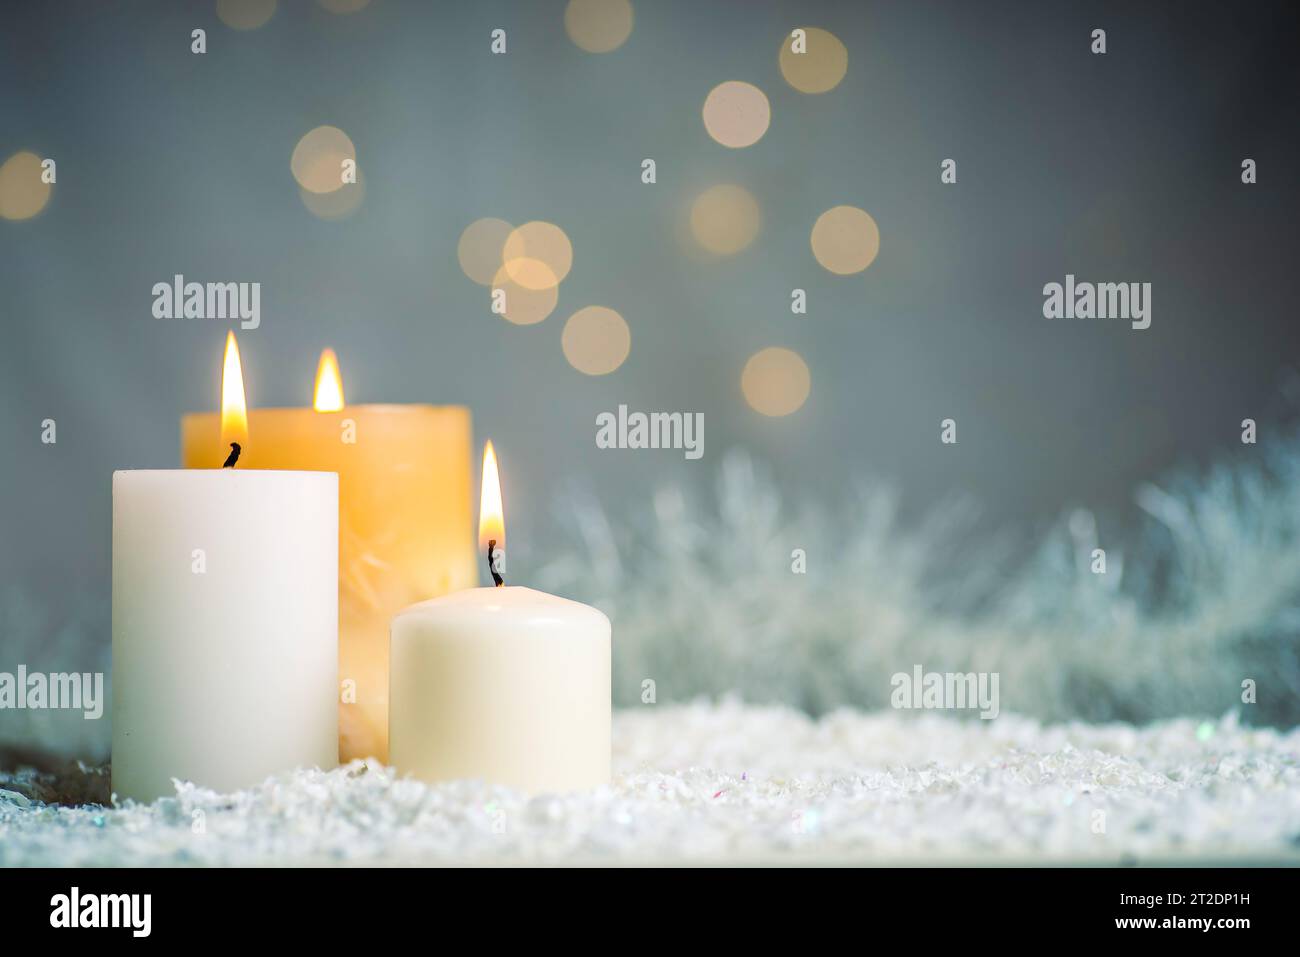 Luz de velas con fondo navideño iluminado y espacio para copias Foto de stock